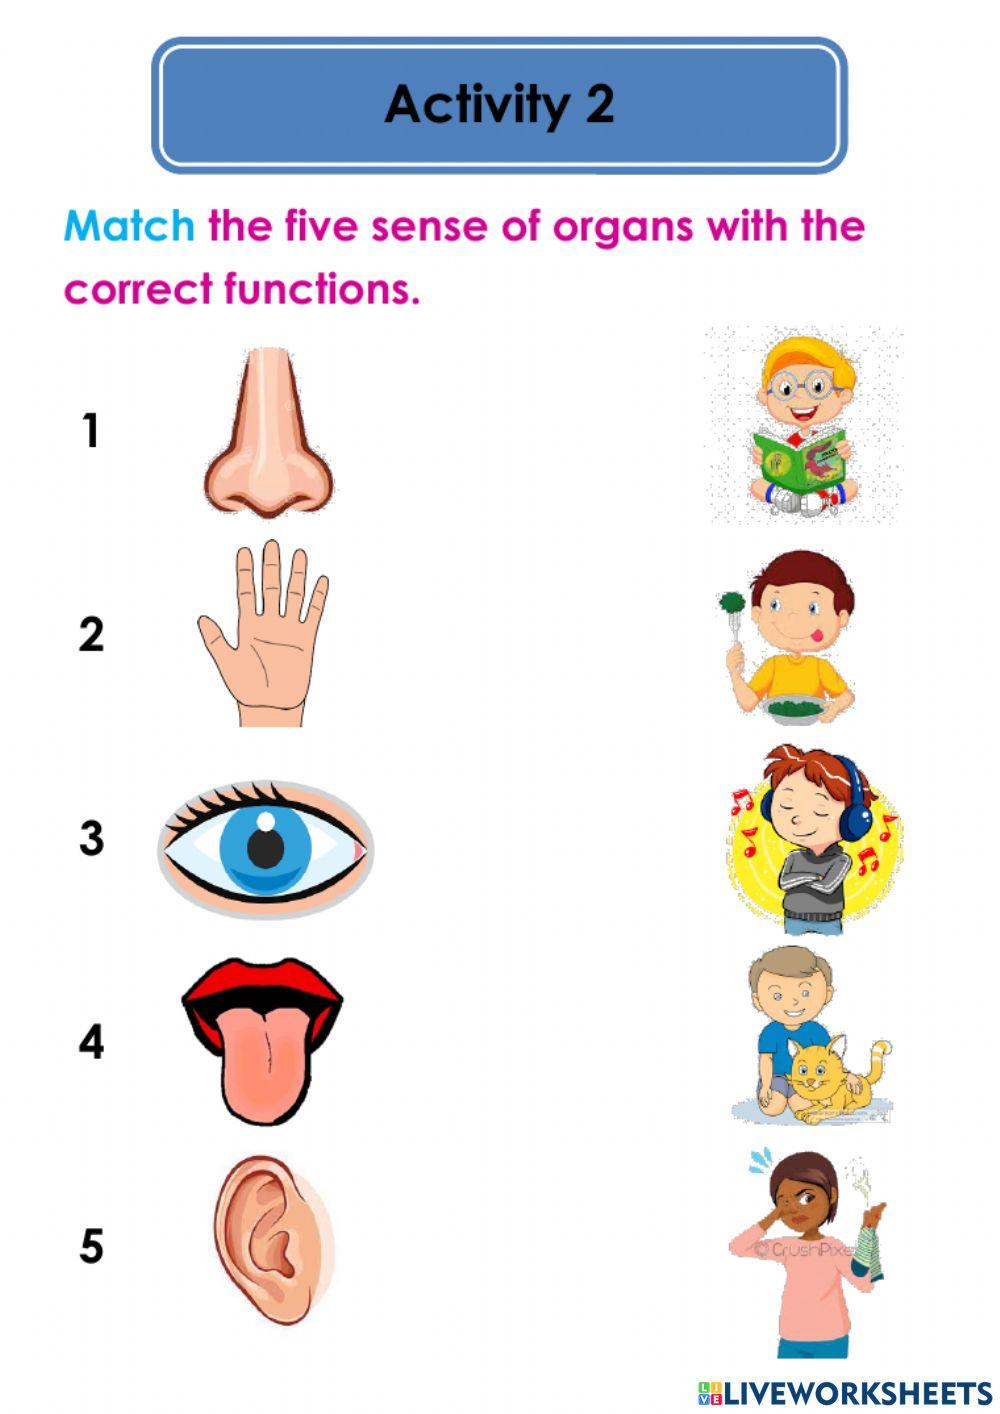 Five sense of organs